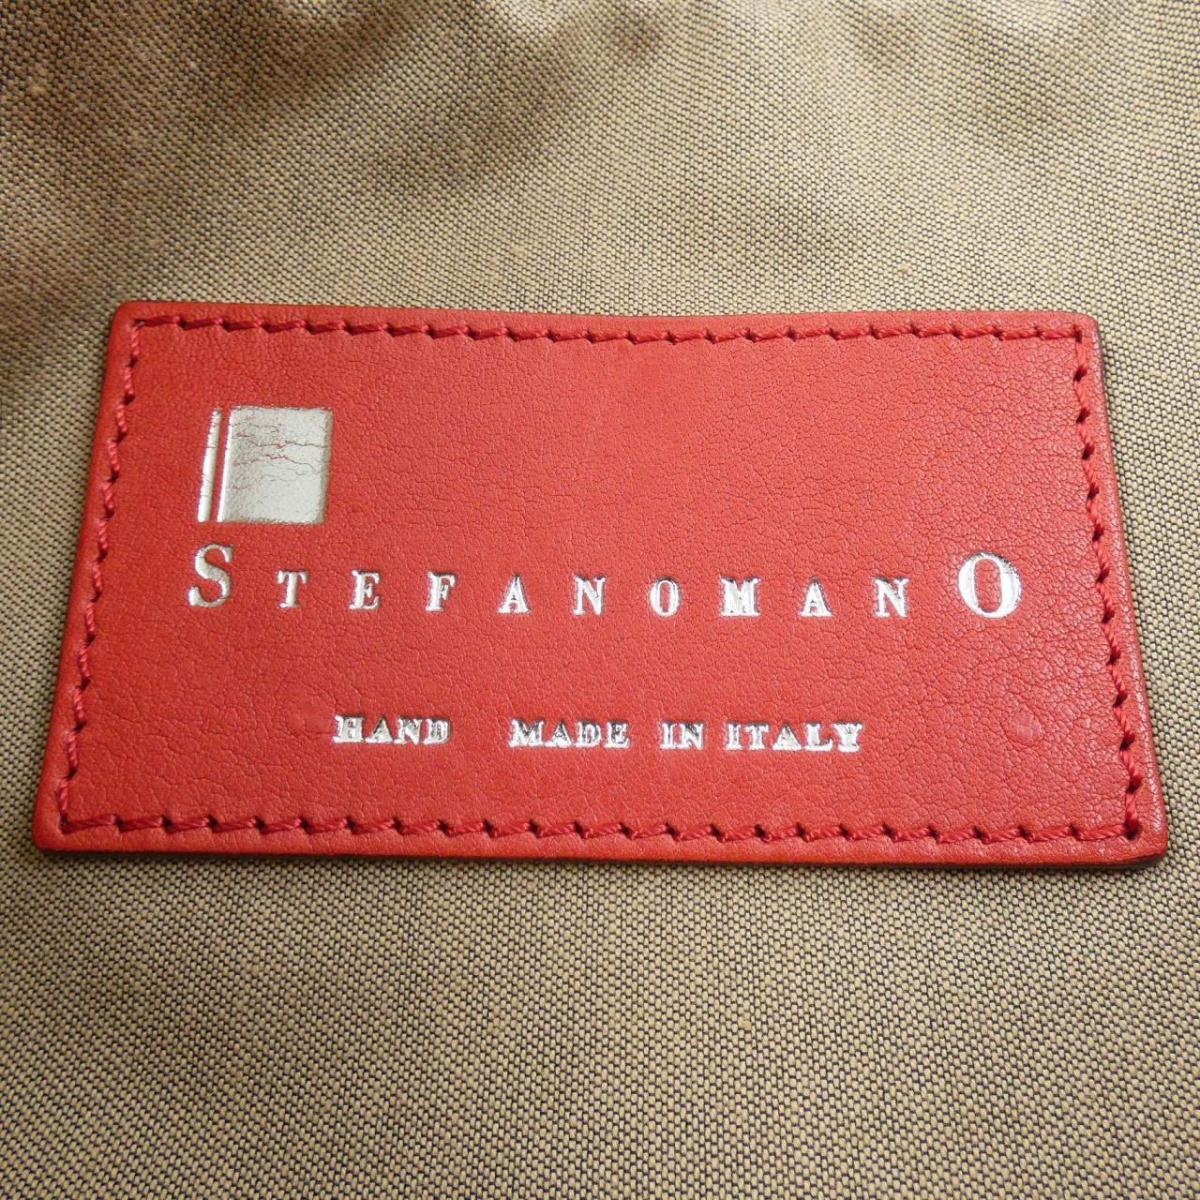 ステファノマーノ STEFANOMANO BAG | monsterdog.com.br